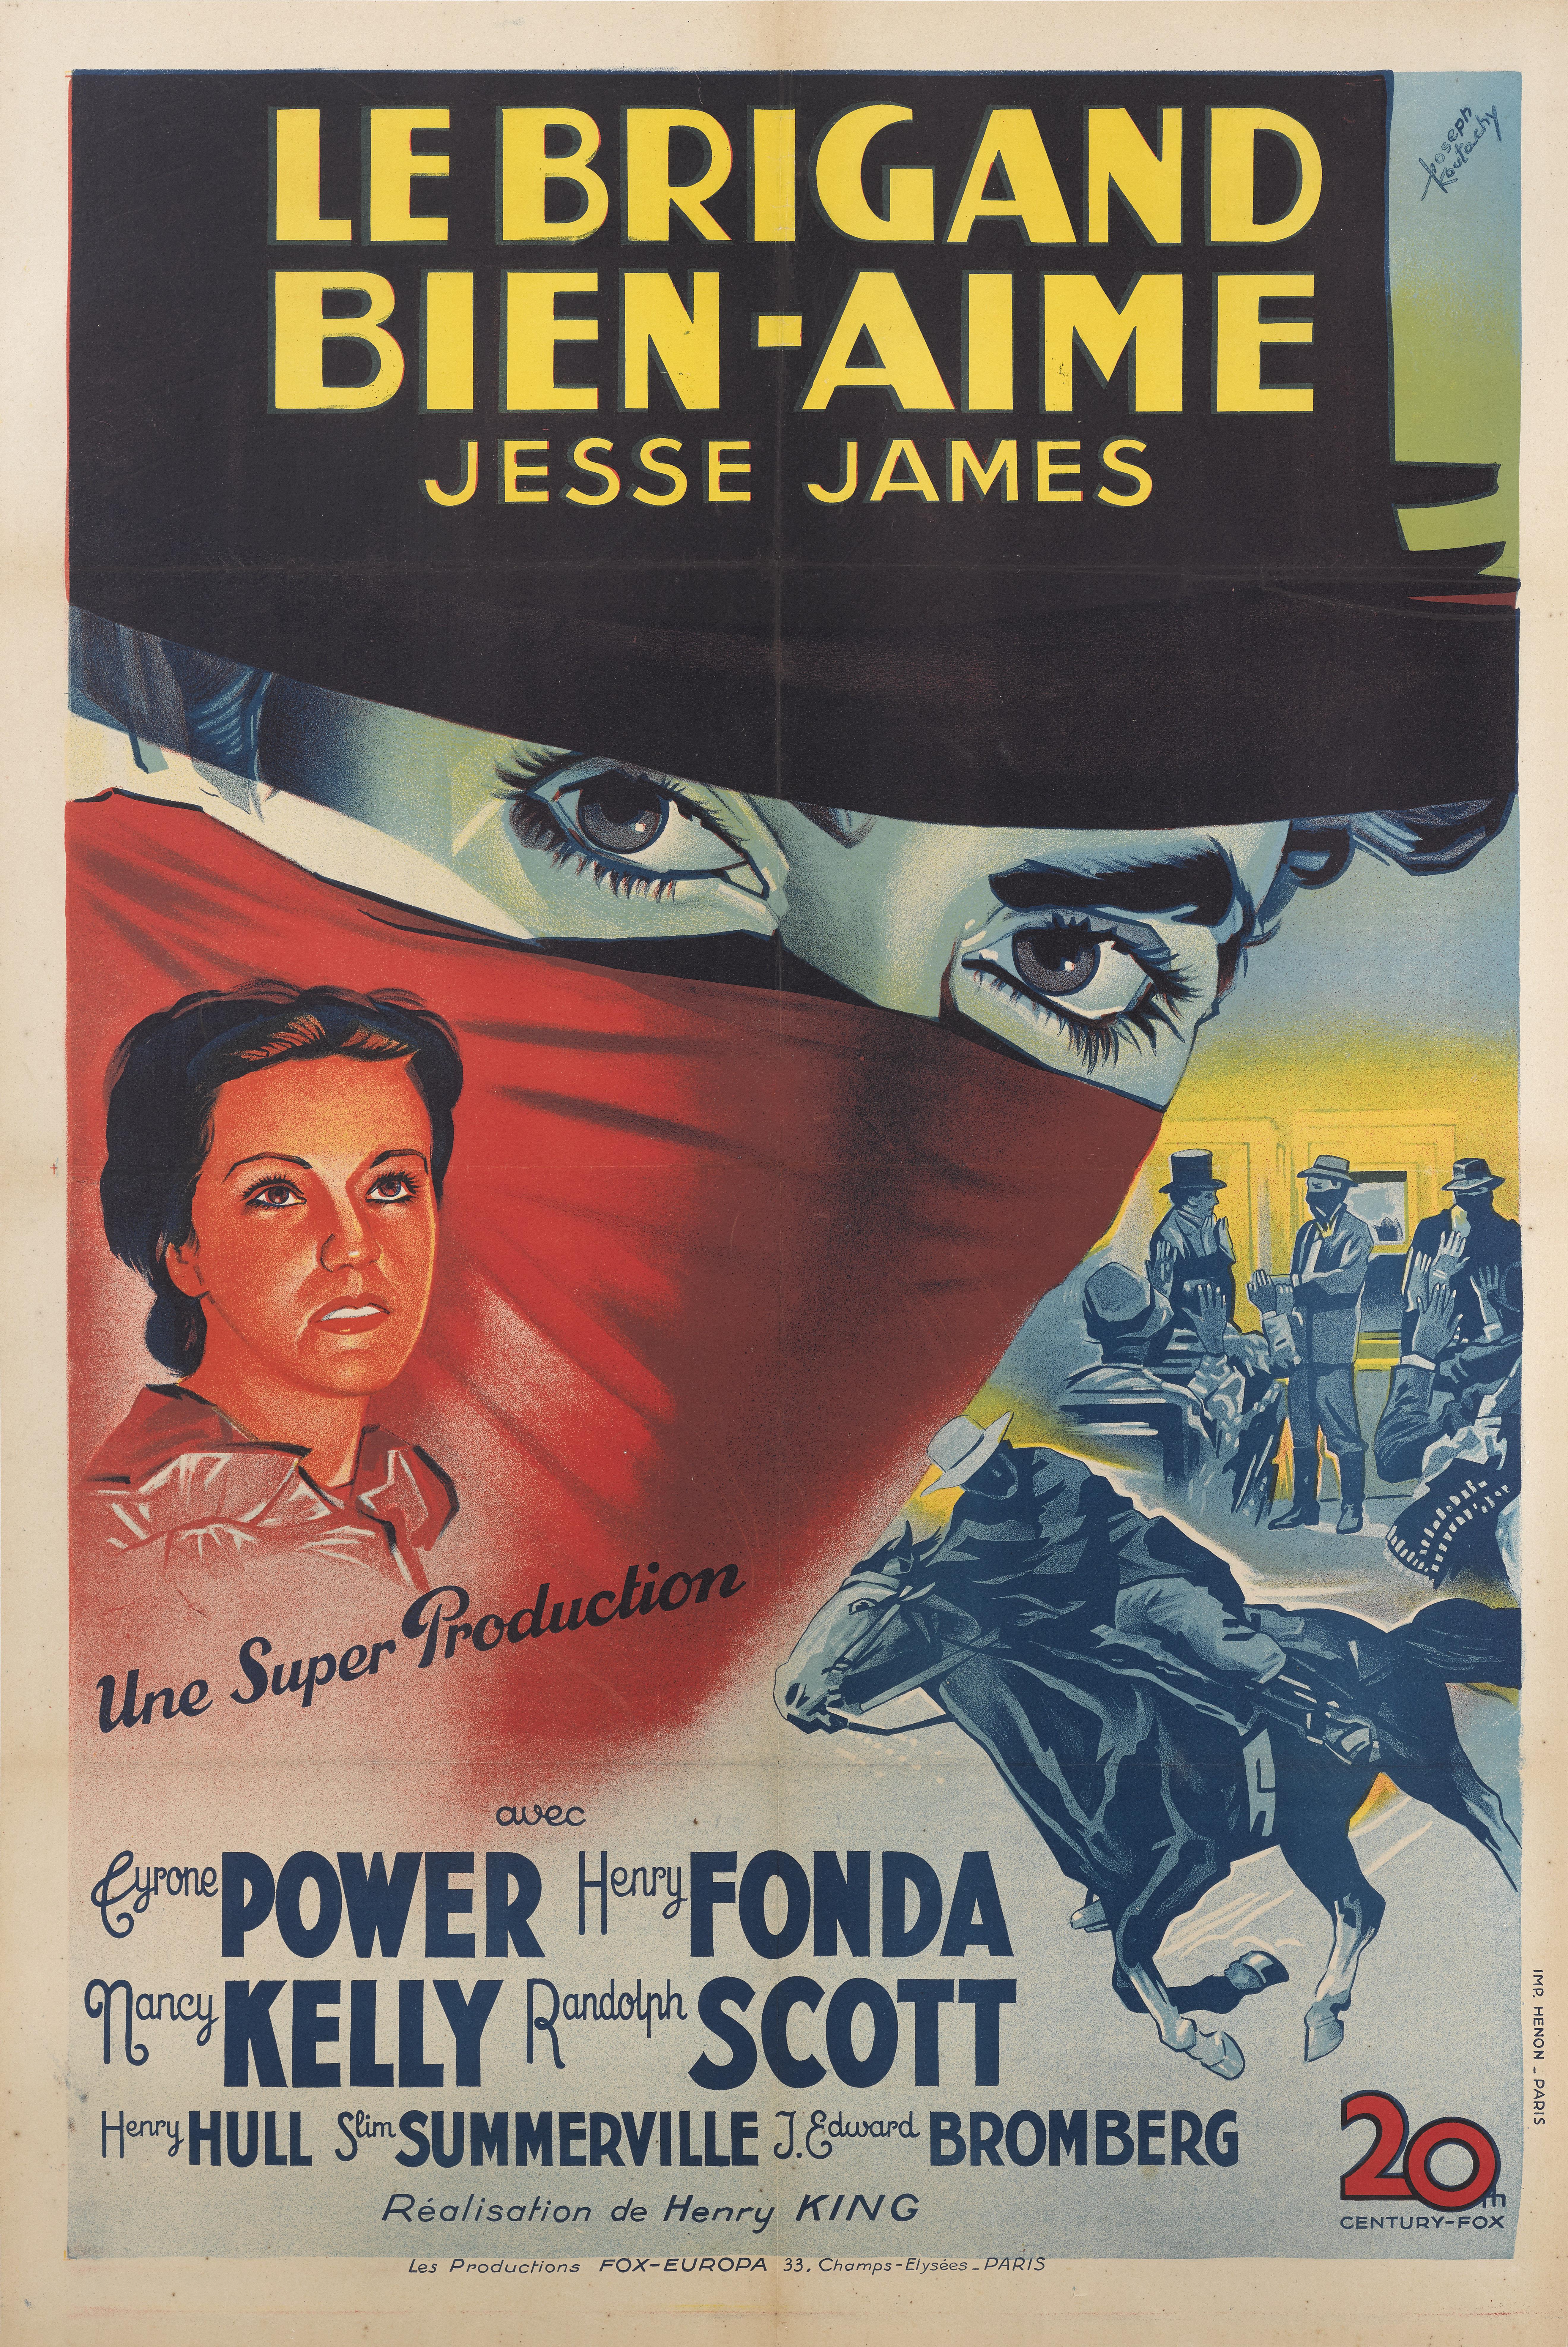 Originales französisches Filmplakat für den Western von 1939. Der Film wurde unter der Regie von Henry King gedreht und zeigt Tyrone Power, Henry Fonda, Nancy Kelly und Randolph Scott. Der Film basiert im Wesentlichen auf dem Leben des berüchtigten